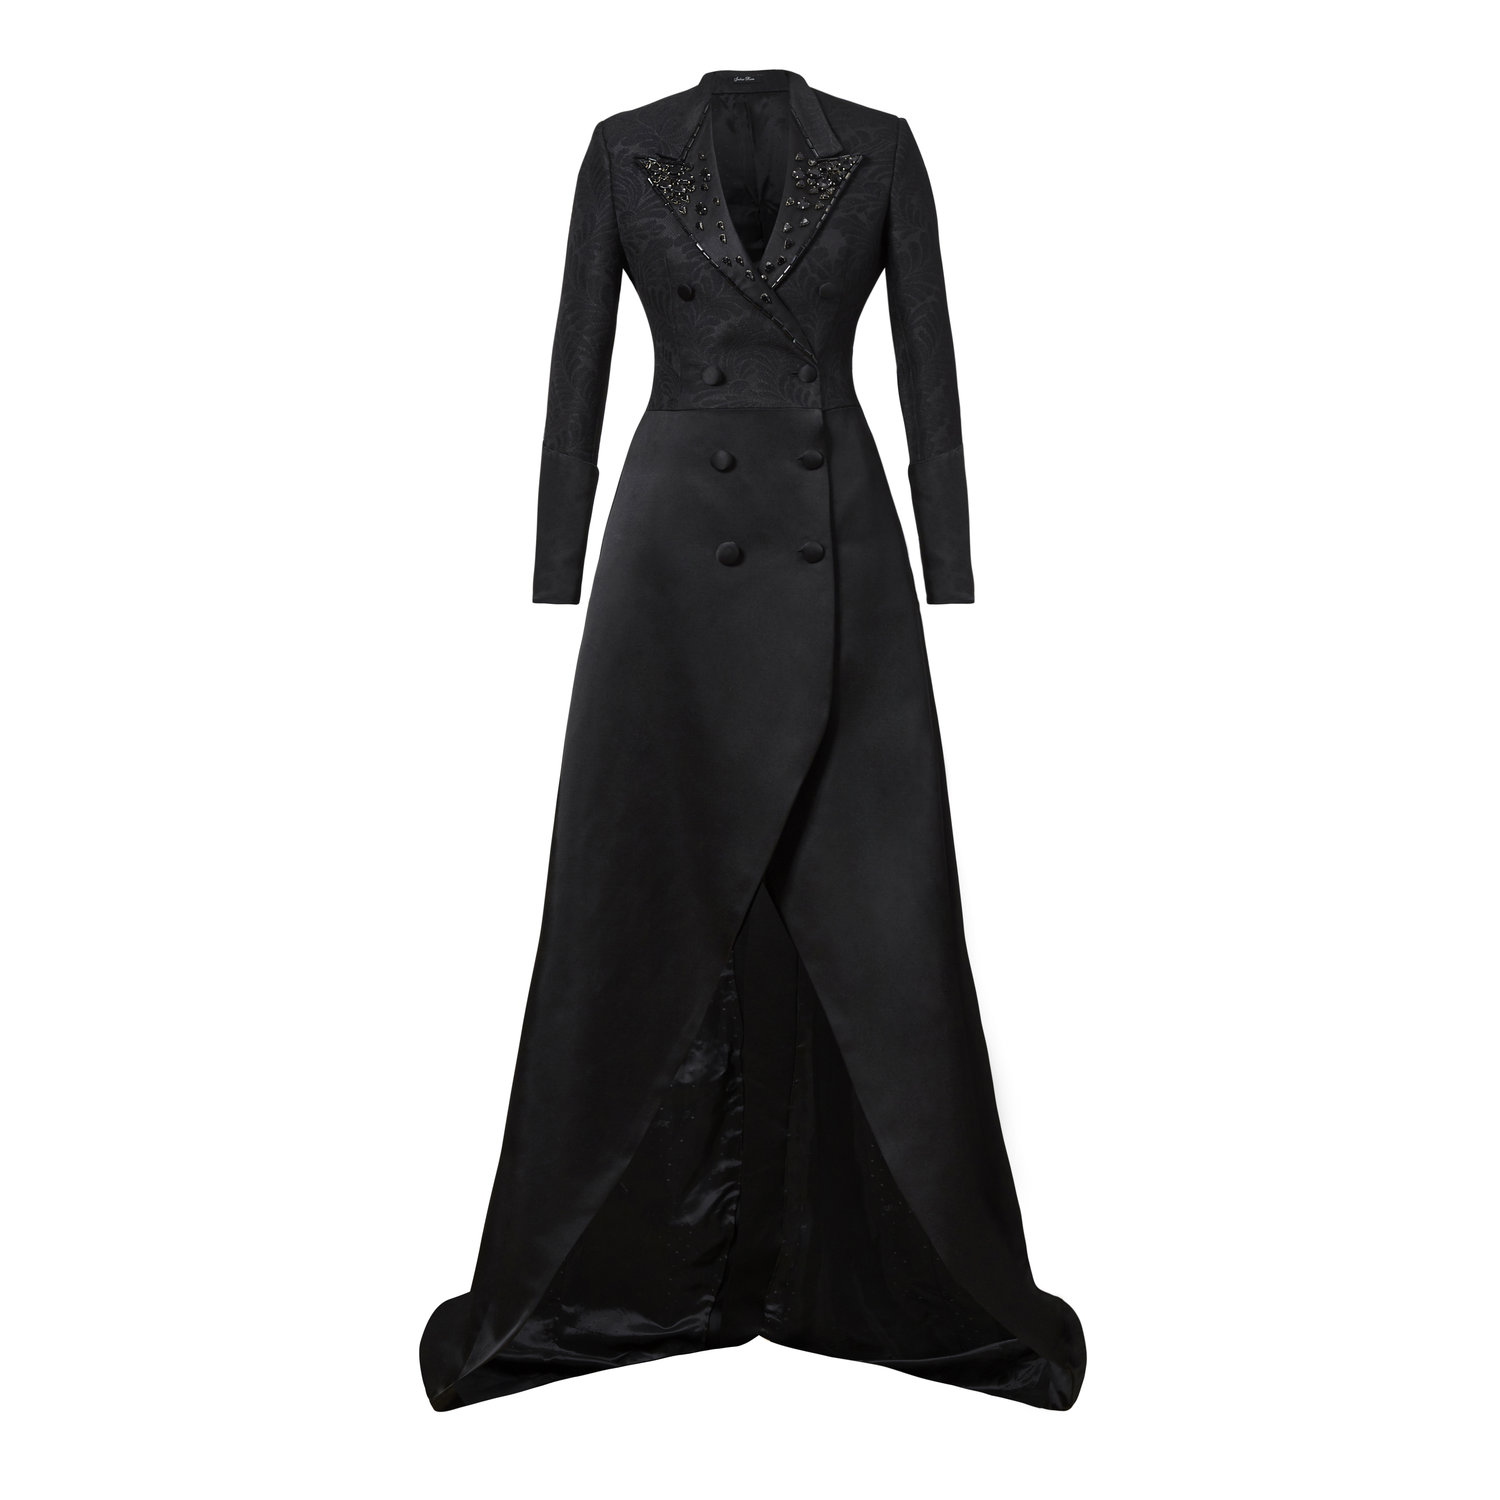 'The Crystal Gown' — Joshua Kanemenswear, fashion, tailoring, bespoke ...